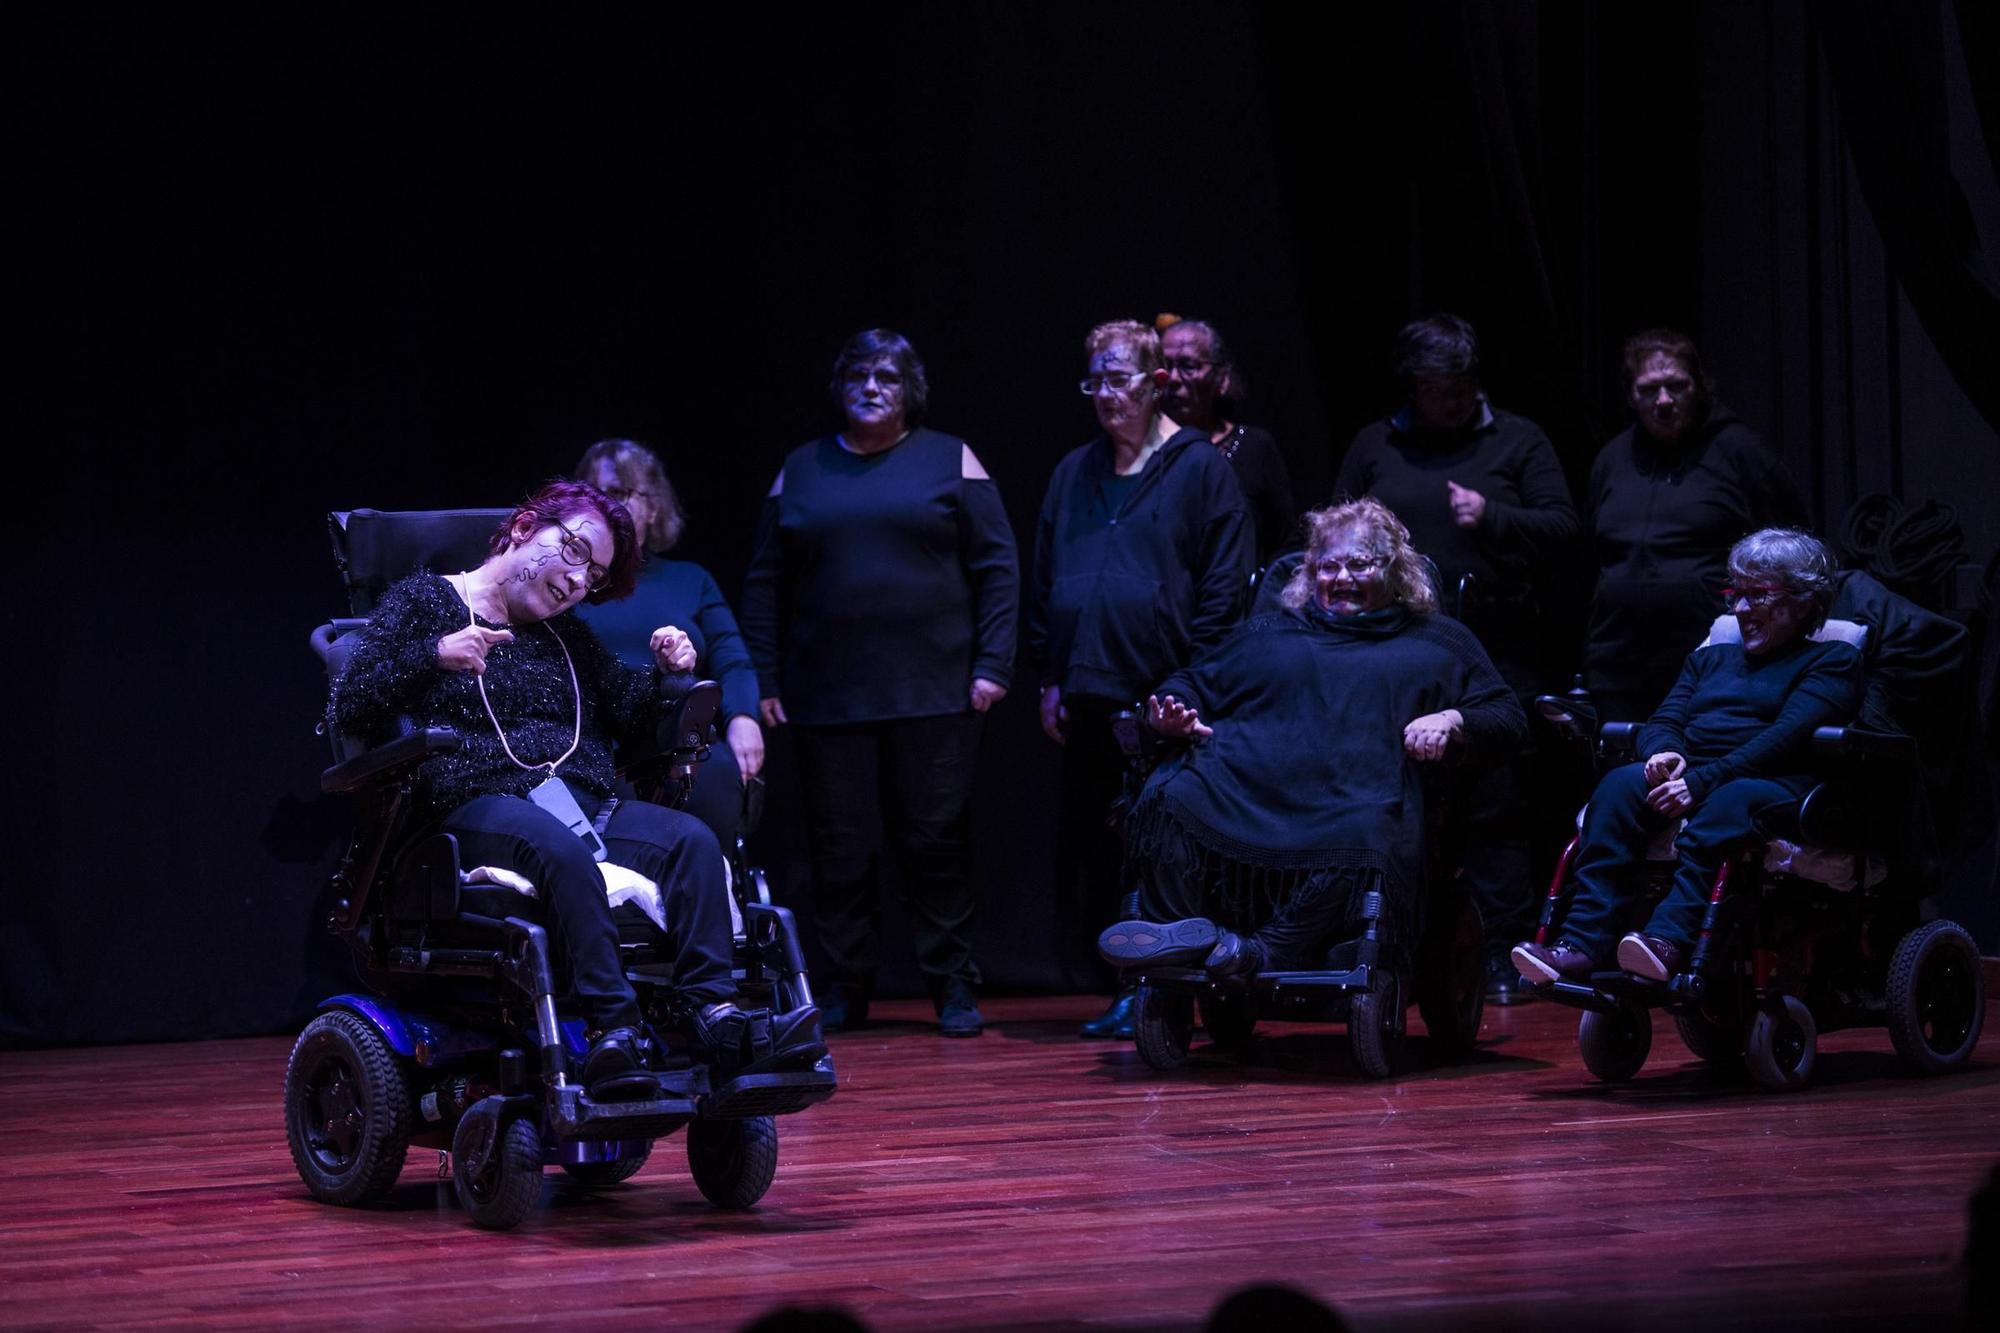 Galería | Así fue la obra de teatro inclusiva en la casa de cultura Rodríguez Moñino de Cáceres